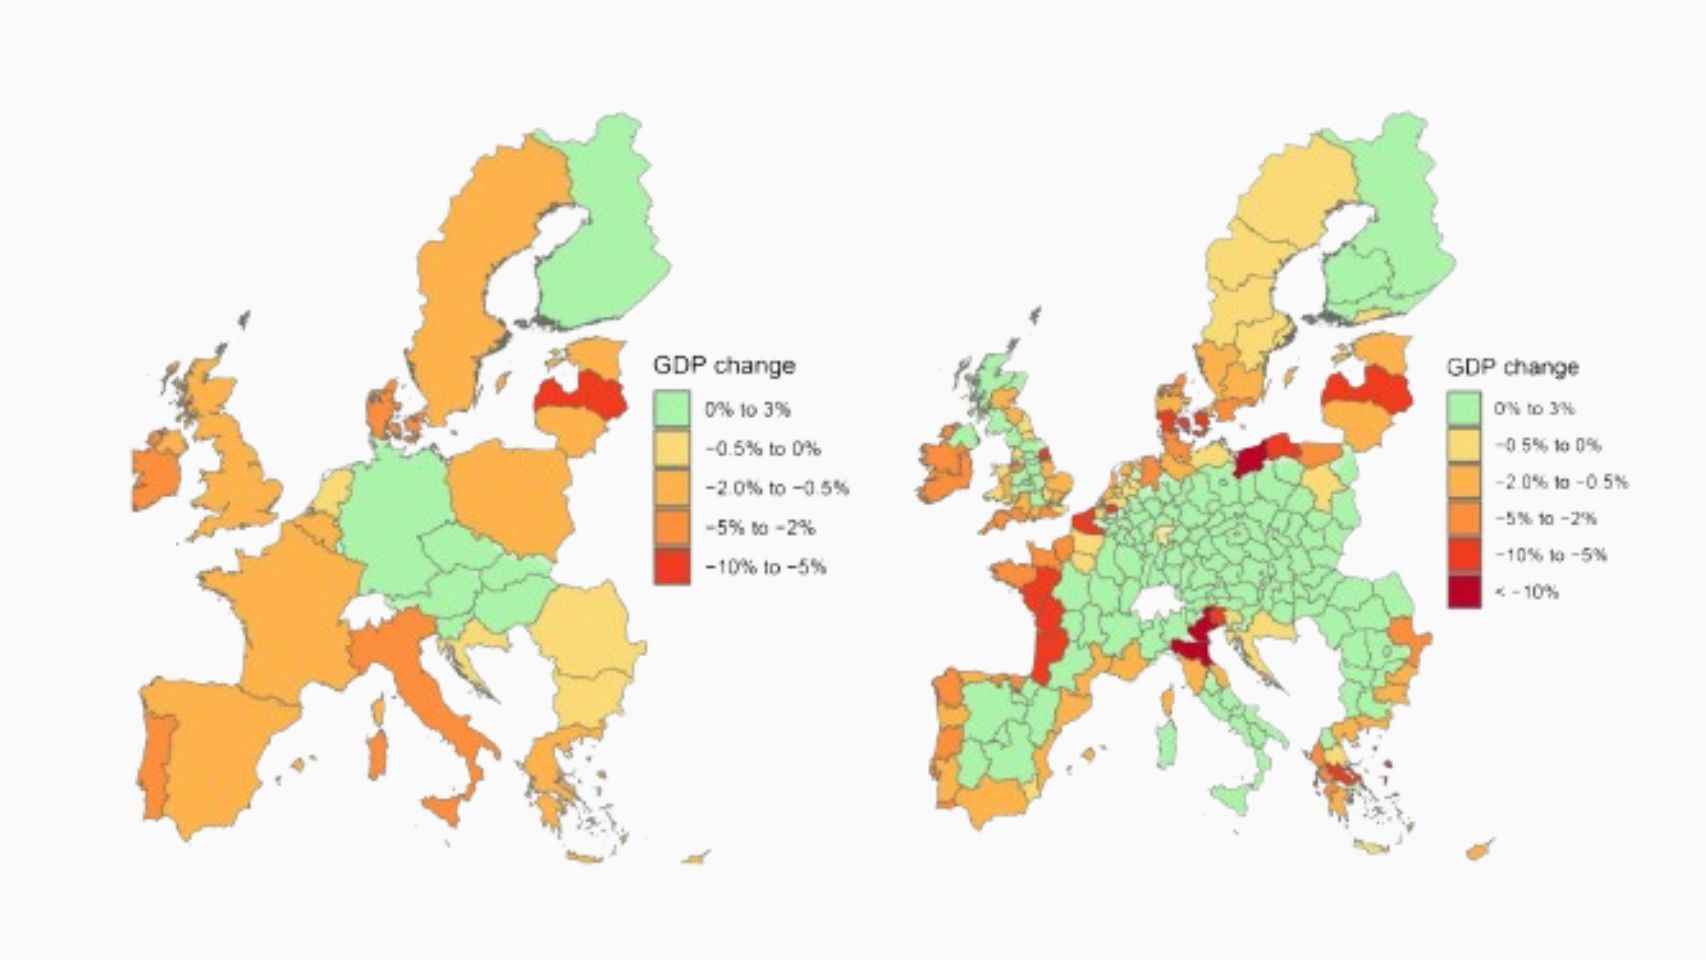 La gráfica representa las estimaciones de aumento o reducción del PIB en un escenario de impacto climático de alto nivel en 2100. Los países coloreados en verde aumentan su PIB hasta un 0,41% (Luxemburgo) en relación con el valor de referencia, mientras que los de color amarillo, naranja y rojo pierden hasta un 7,69% (Letonia).